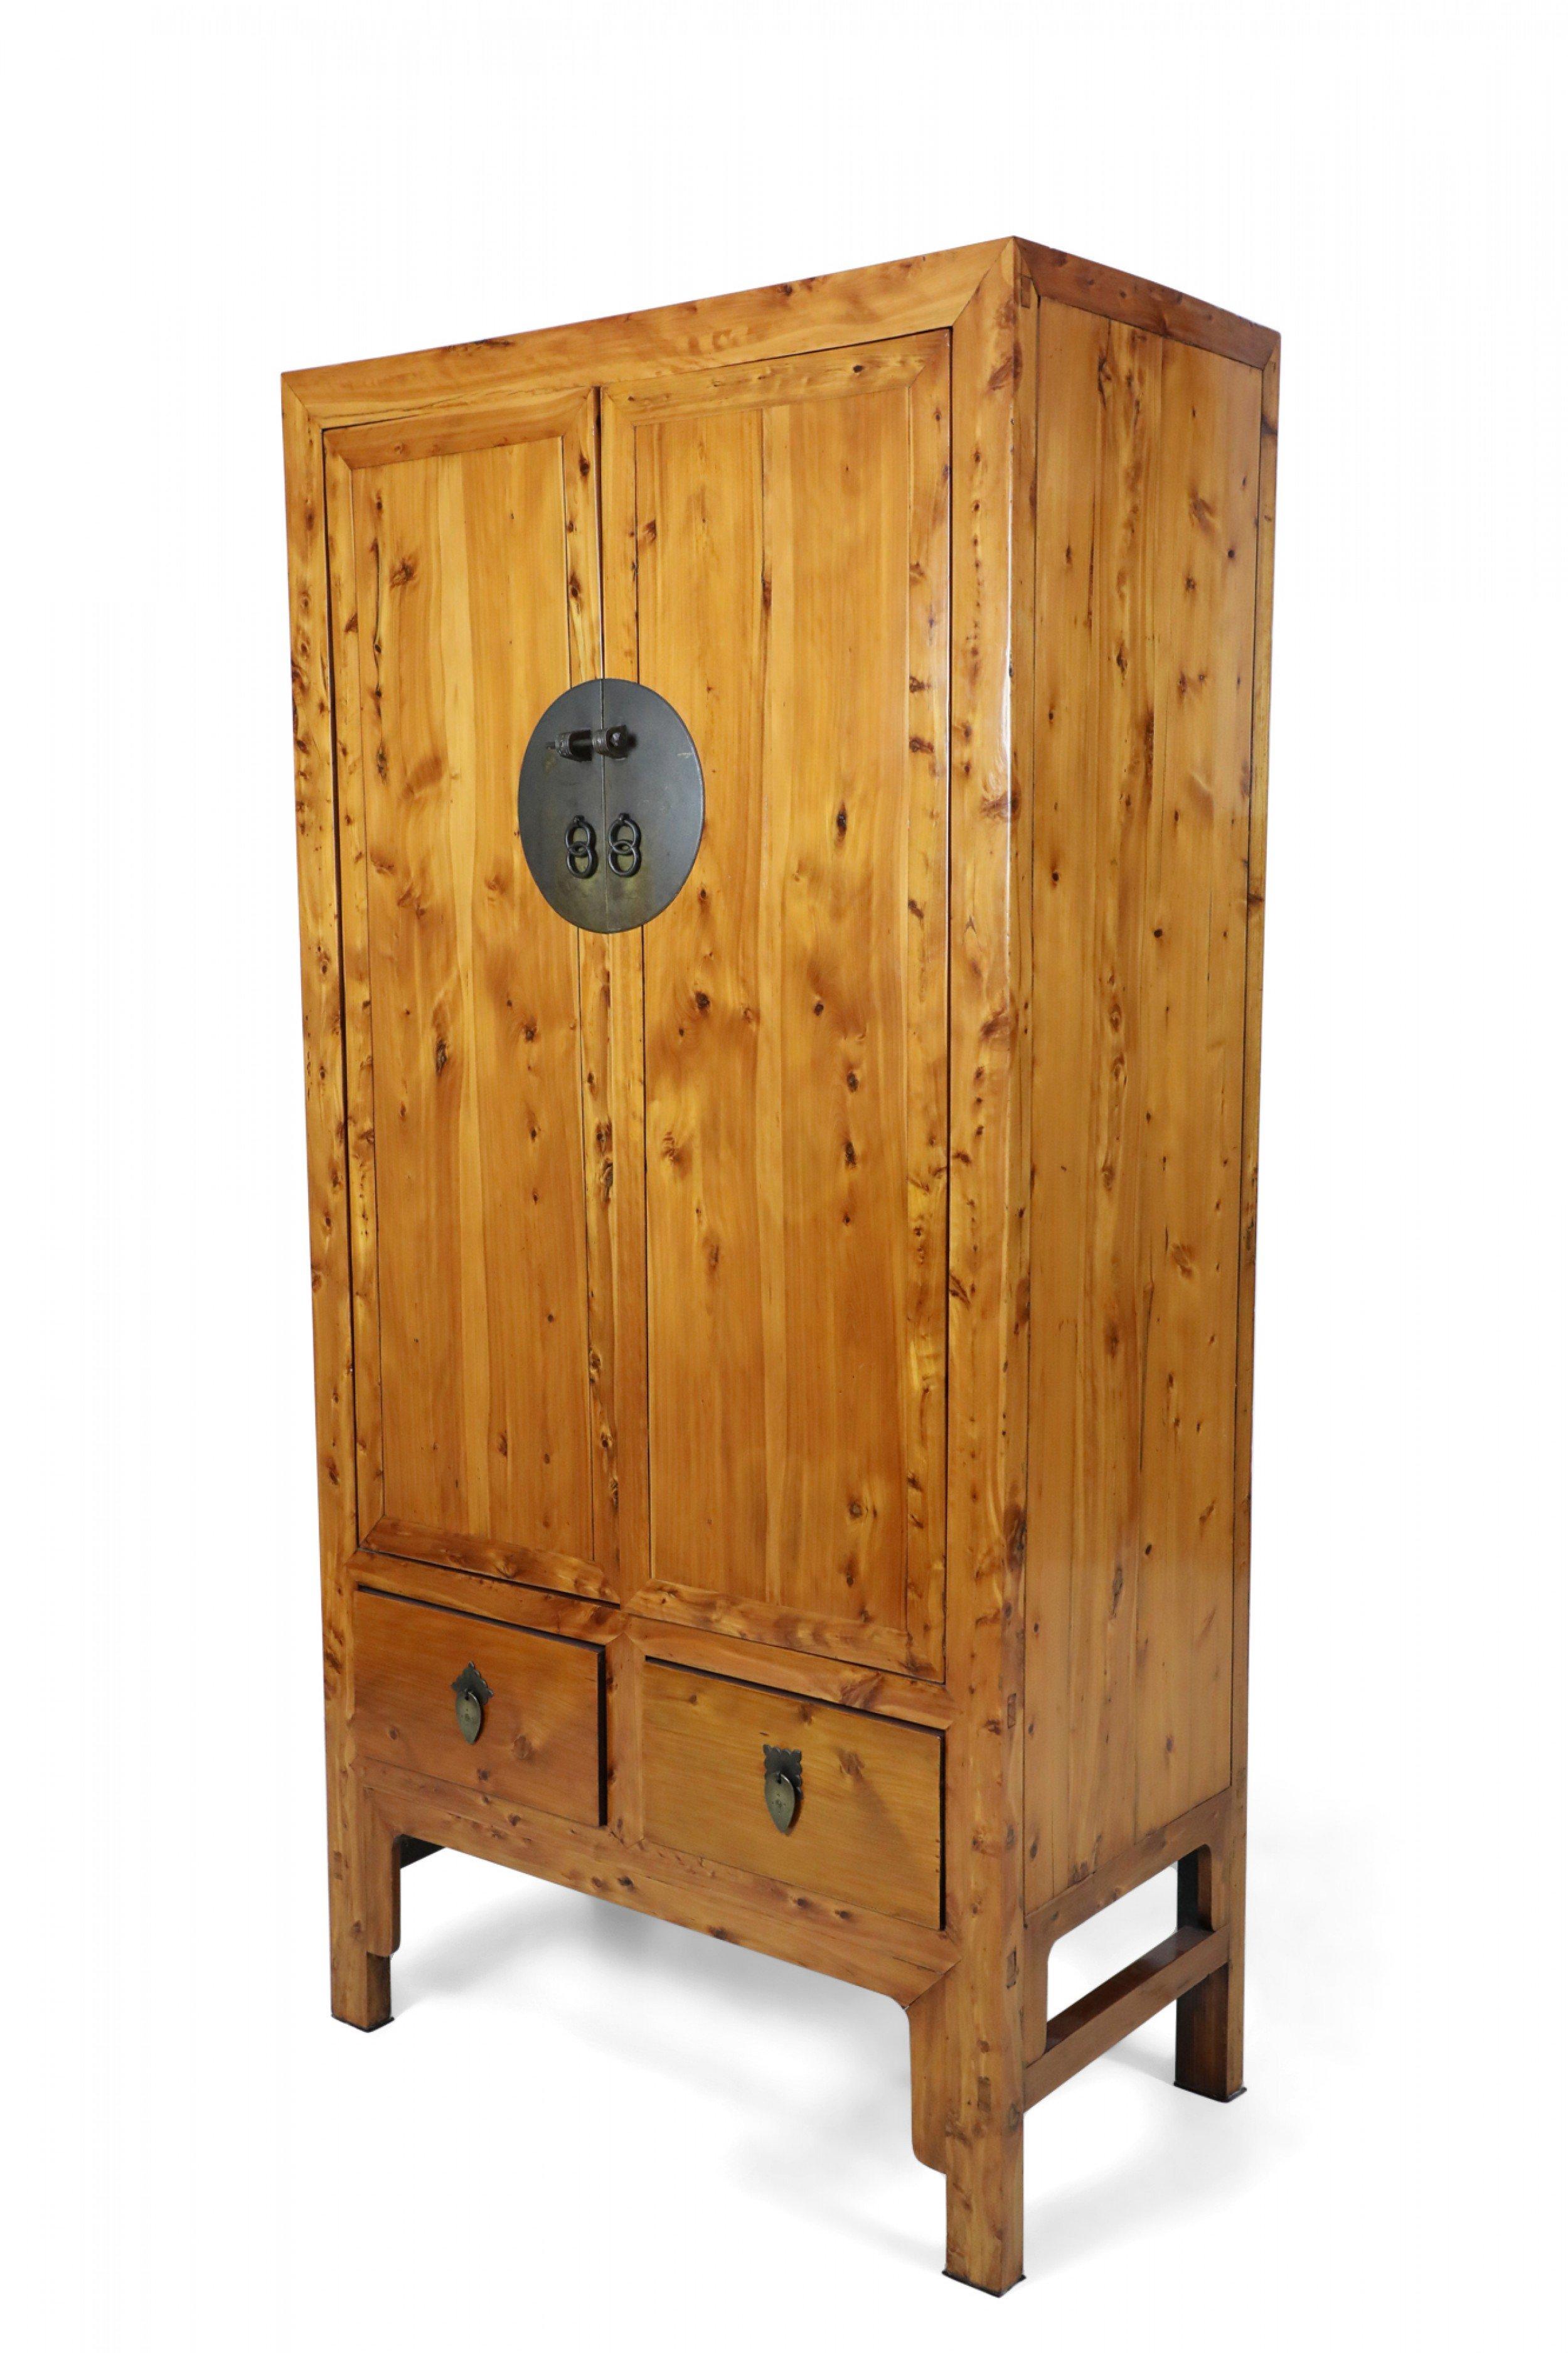 Armoire chinoise (19e siècle) en bois dur avec une grande fermeture à goupille en bronze sur les 2 portes avant qui ont 2 tiroirs intérieurs avec 2 tiroirs supplémentaires sous les portes de l'armoire avec des tirettes en bronze en forme de feuille.